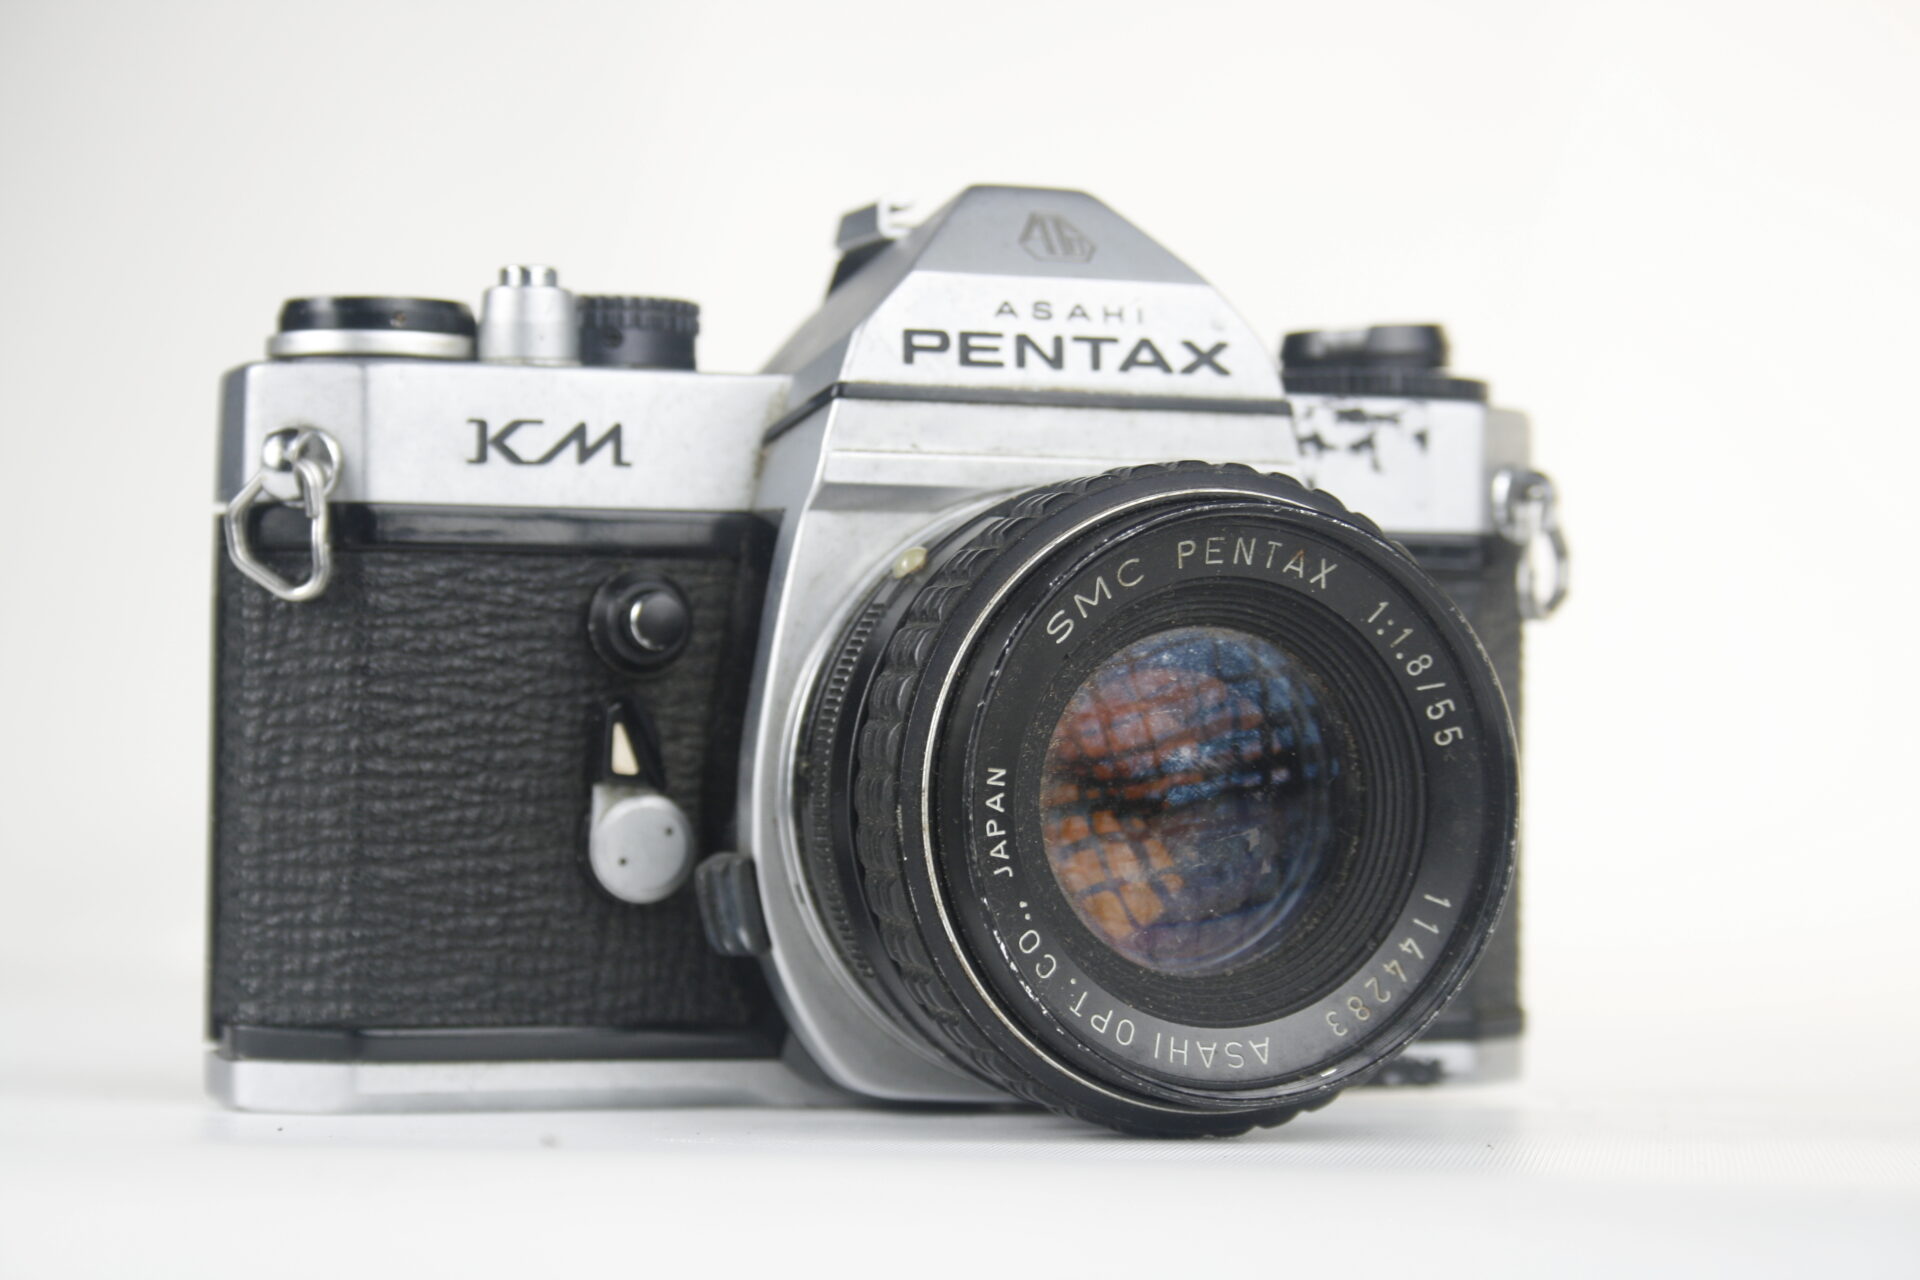 Pentax (Asahi) KM. 35mm SLR camera. 1975. Japan.